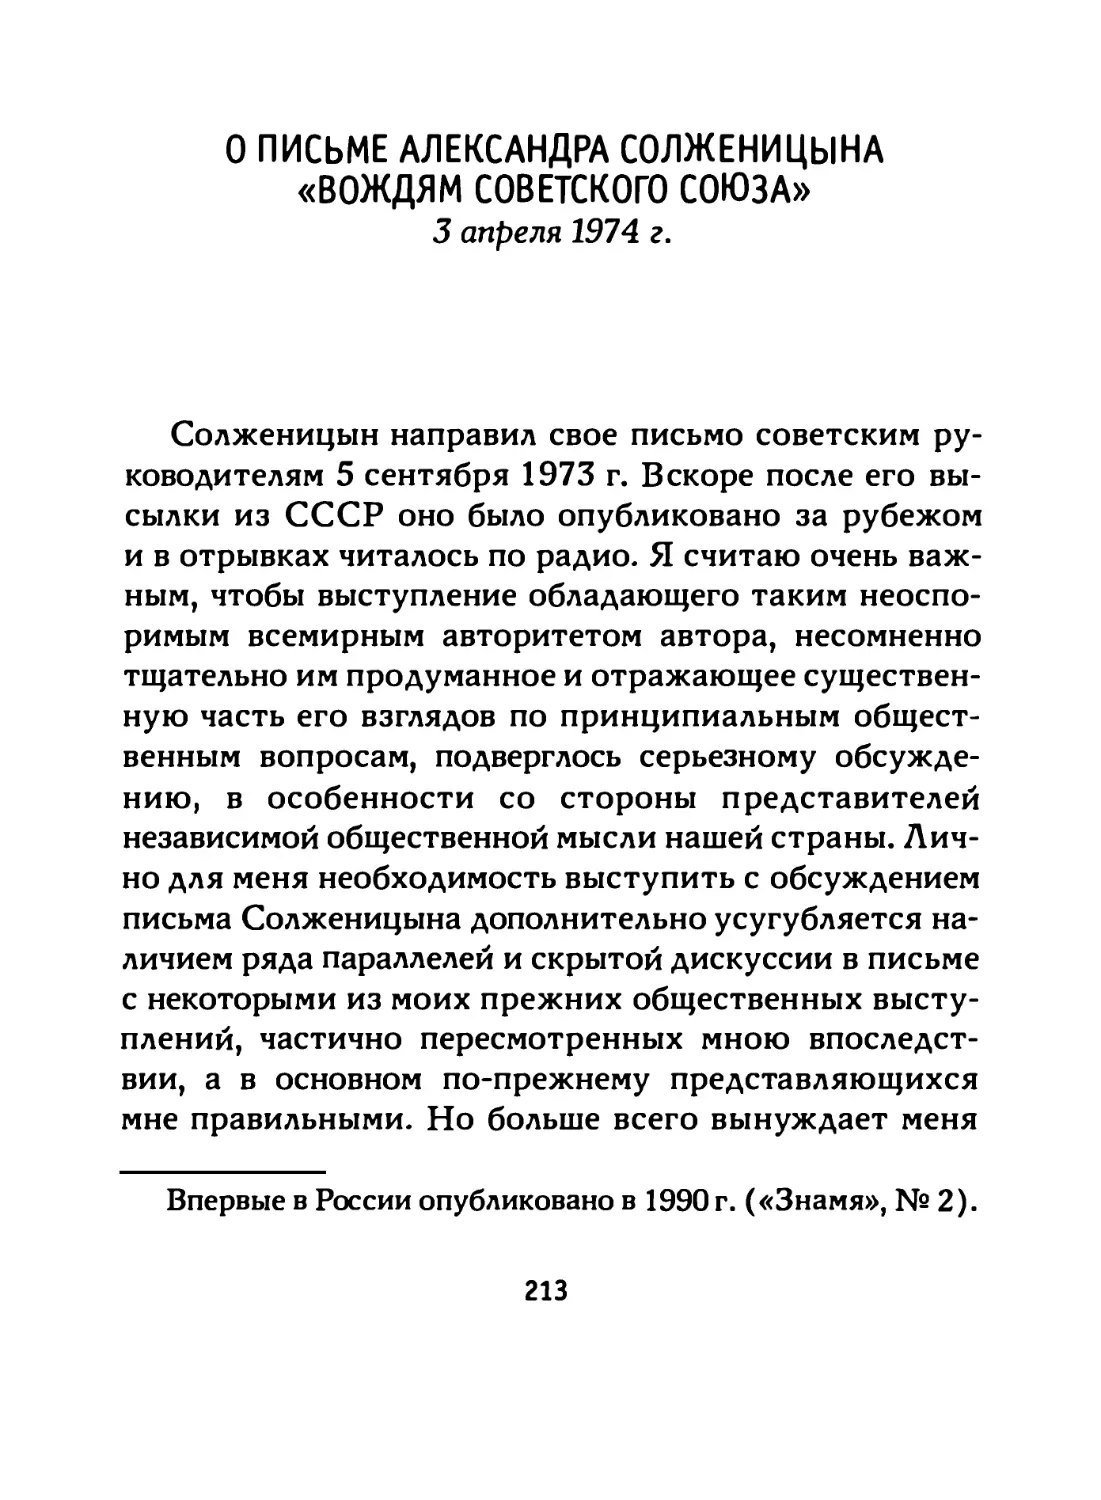 О письме Александра Солженицына «Вождям Советского Союза» (3 апреля 1974 г.)